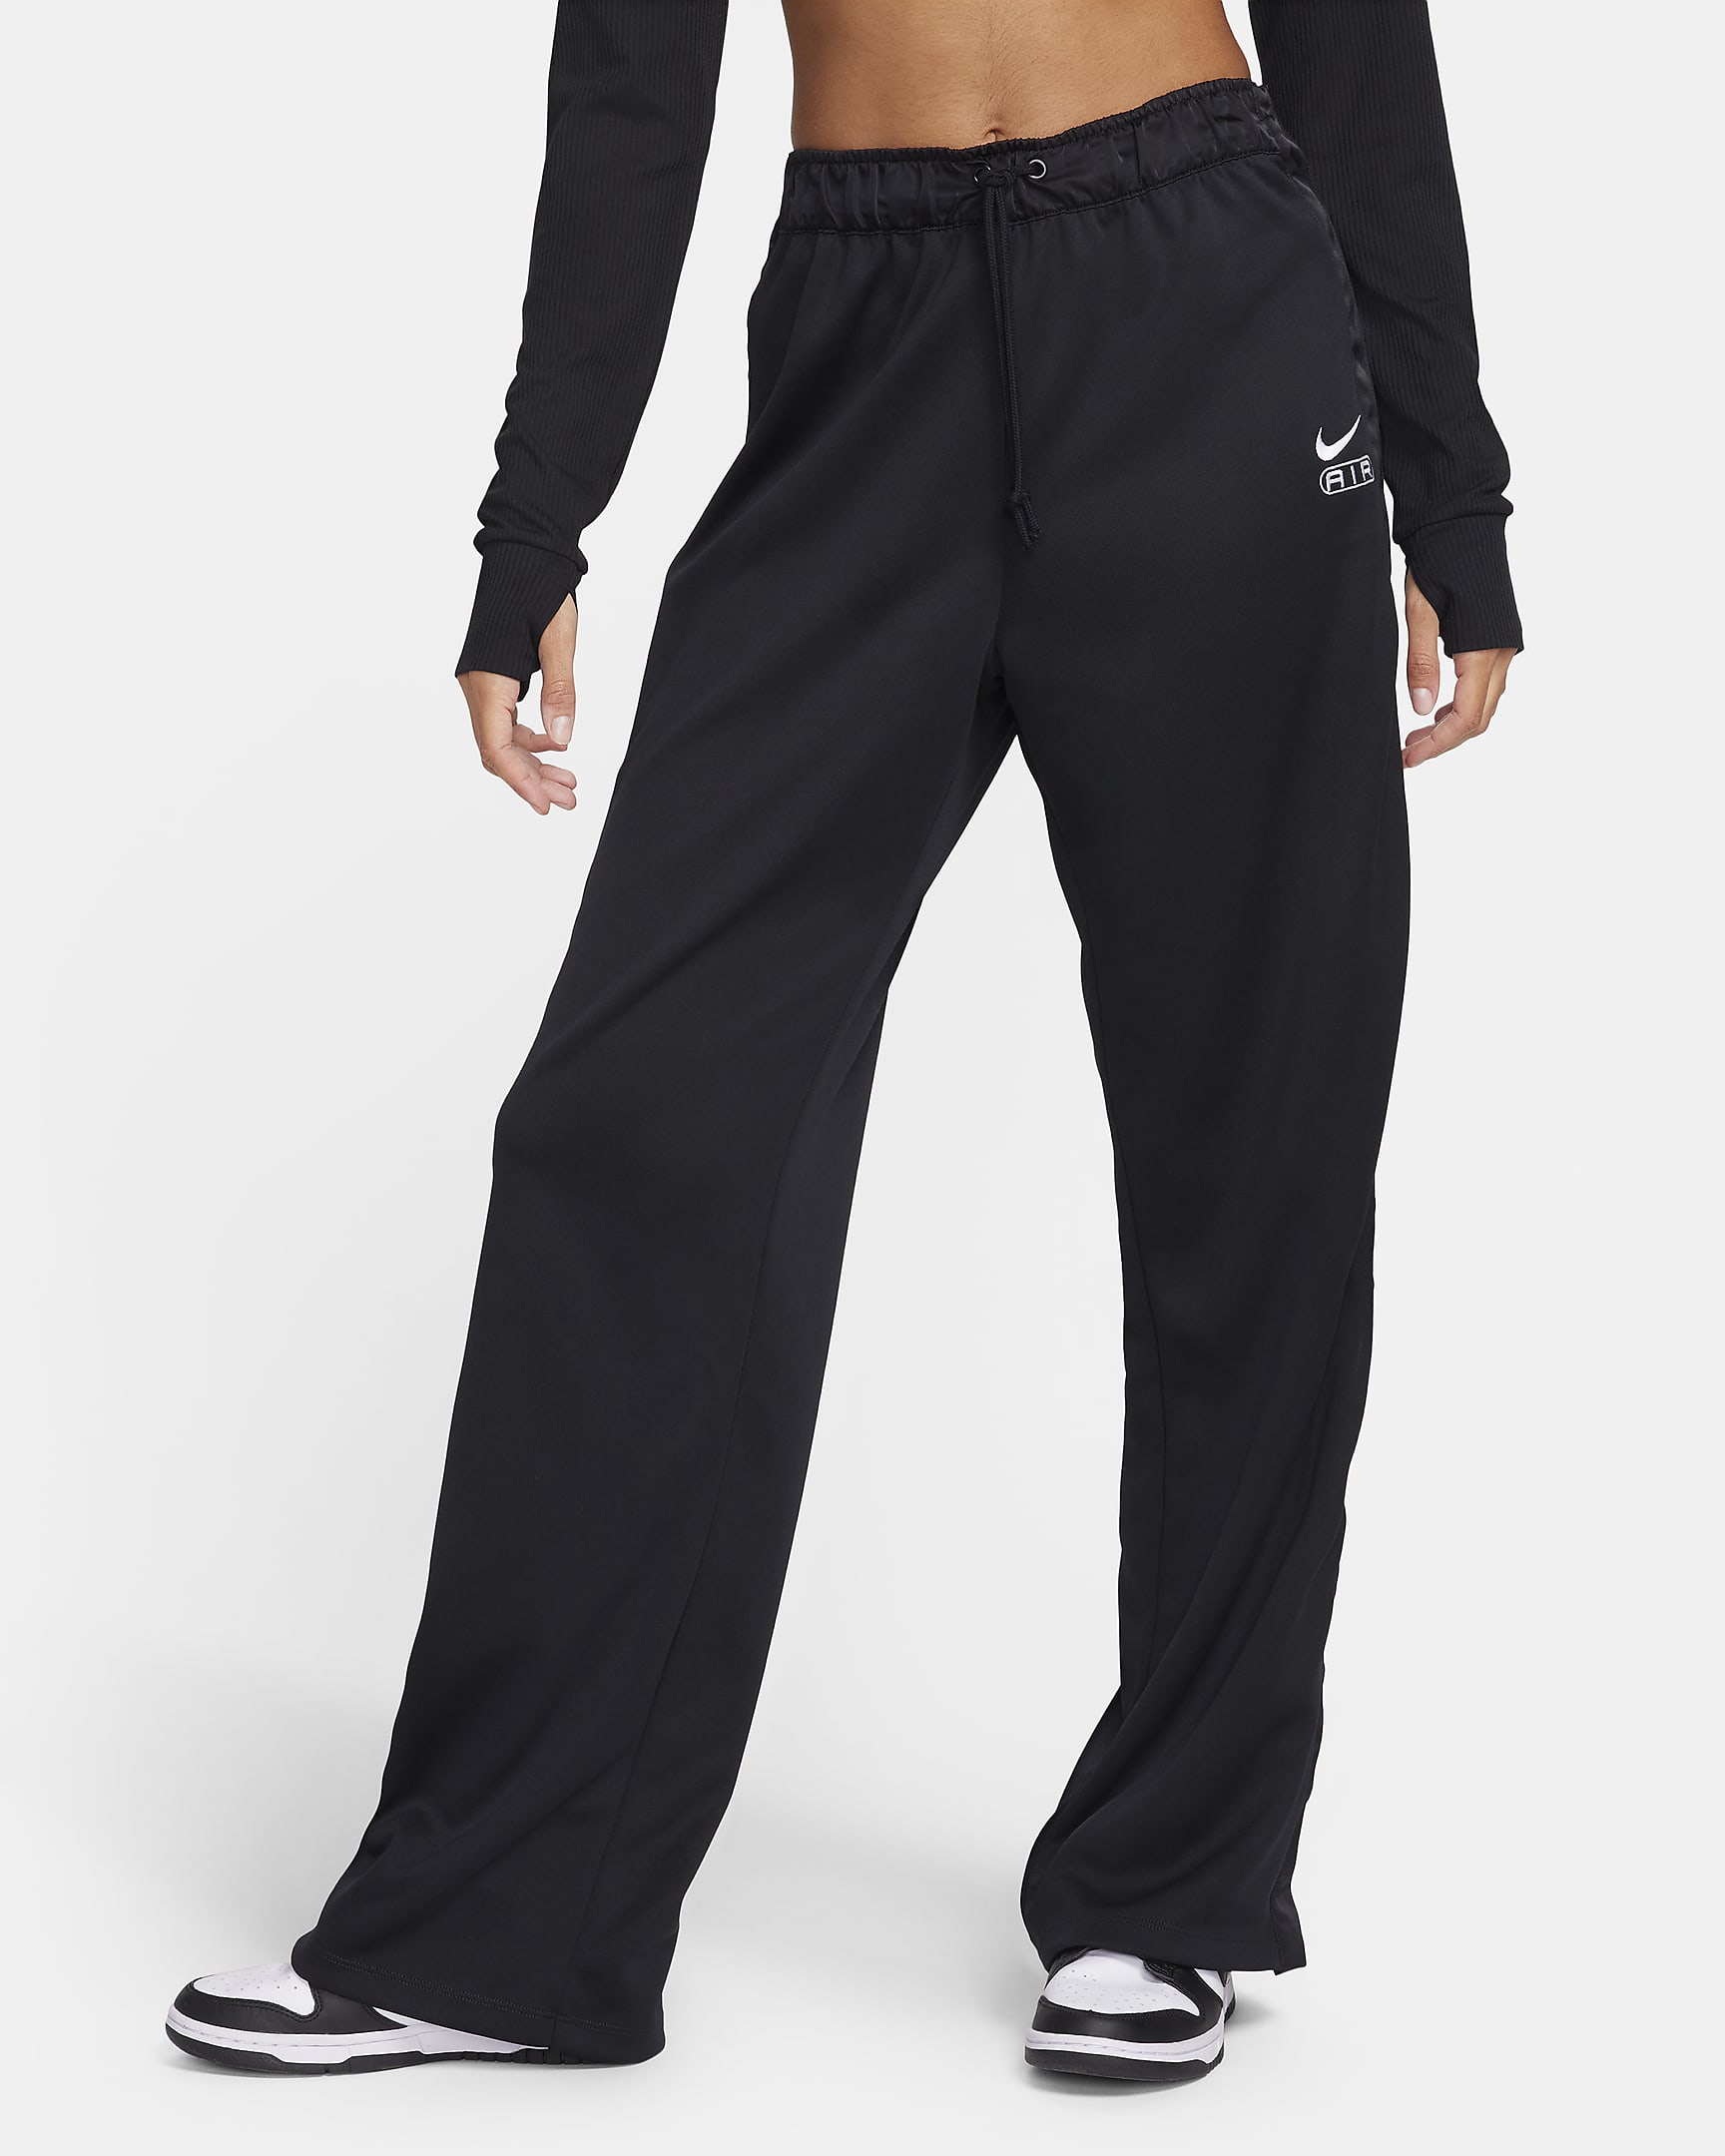 Nike Air Women's Mid-Rise Breakaway Trousers. Nike ZA